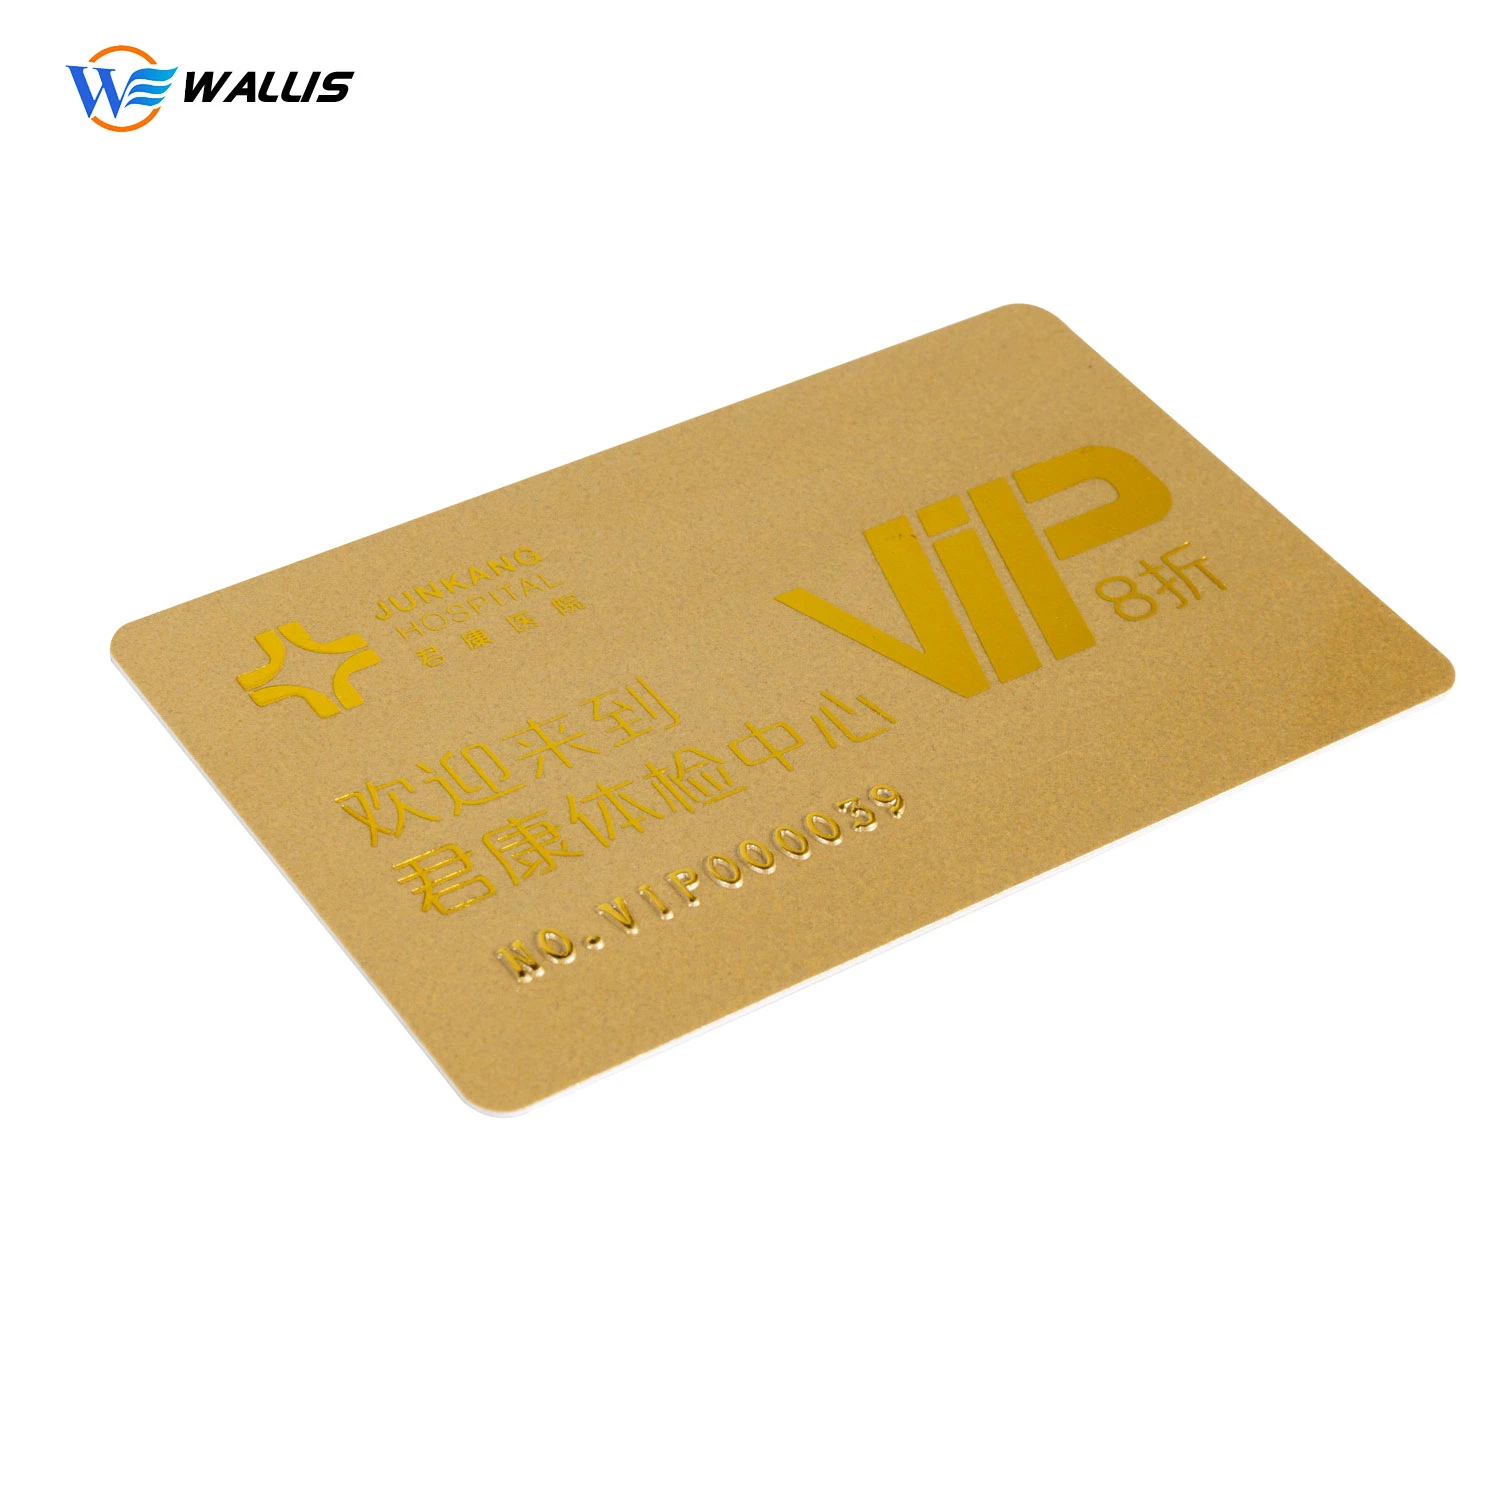 Échantillon employé d'adhésion Gold VIP gratuit Couleur de base Remise d'identification de carte plastique PVC